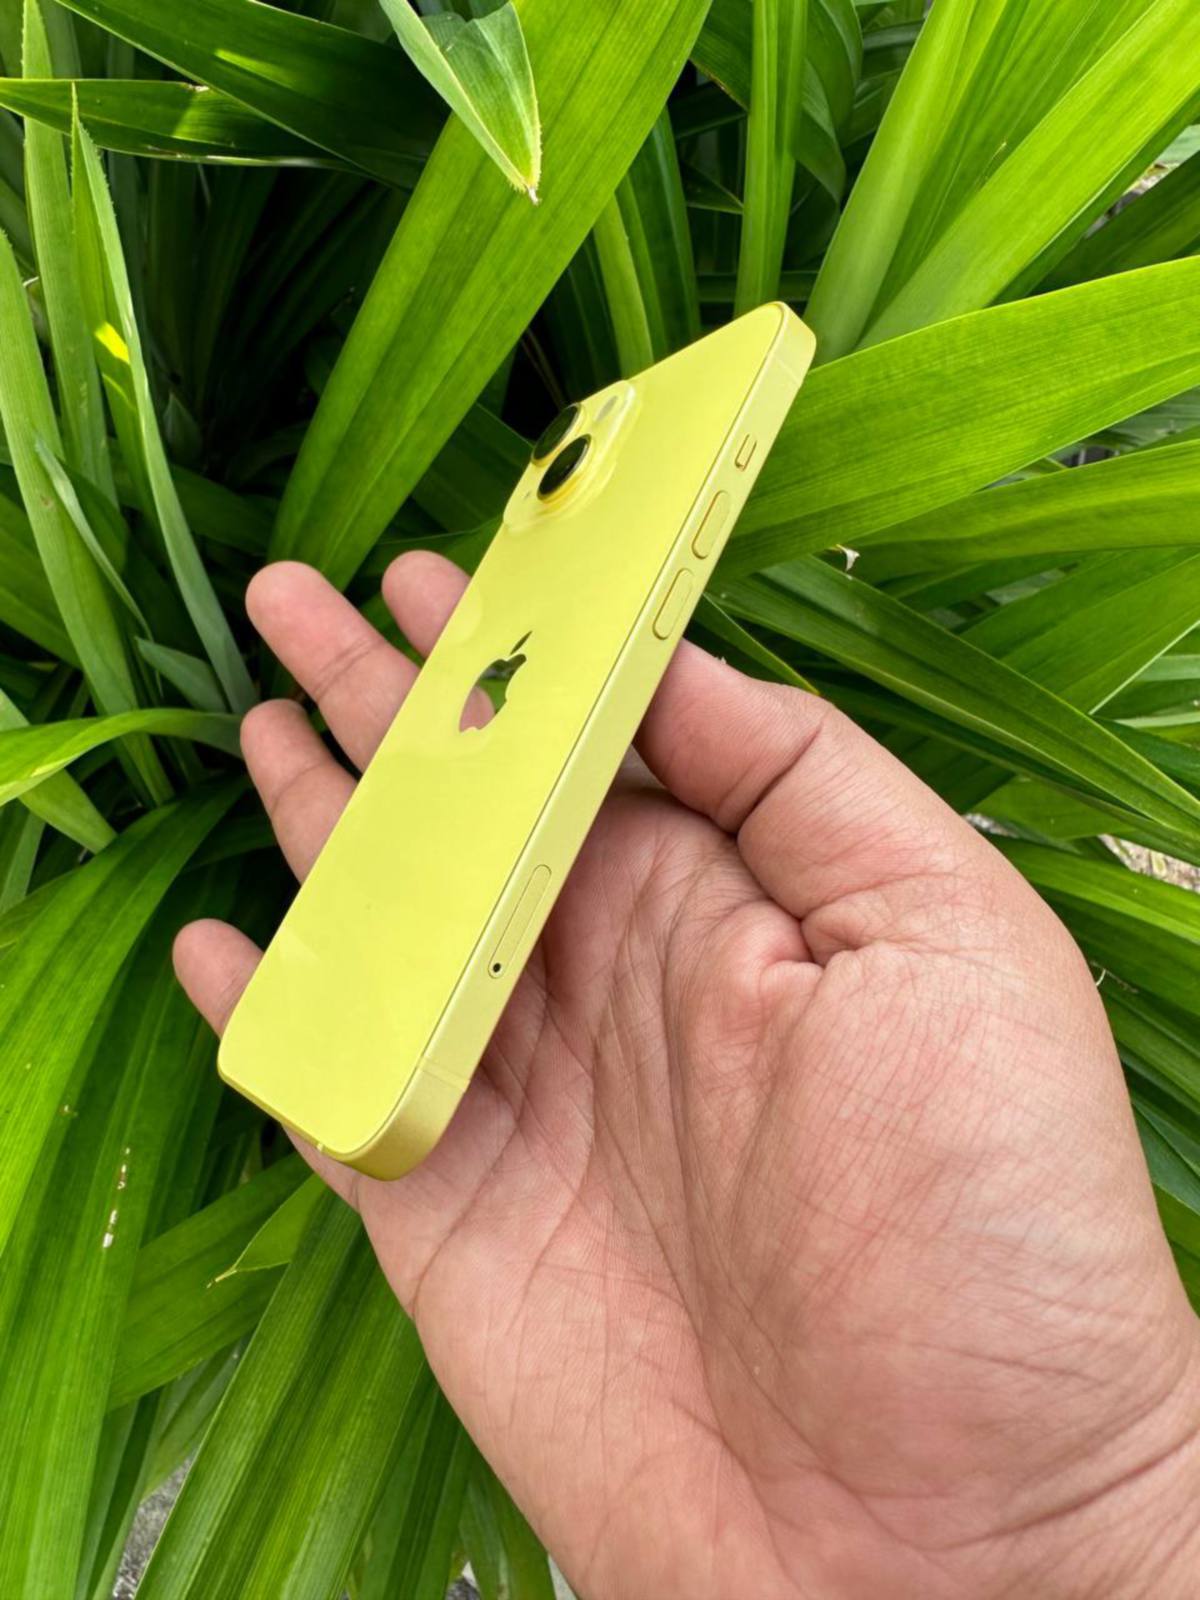 KEMASAN bingkai untuk iPhone ini juga turut menggunakan warna kuning sesuai dengan warna asas peranti ini.